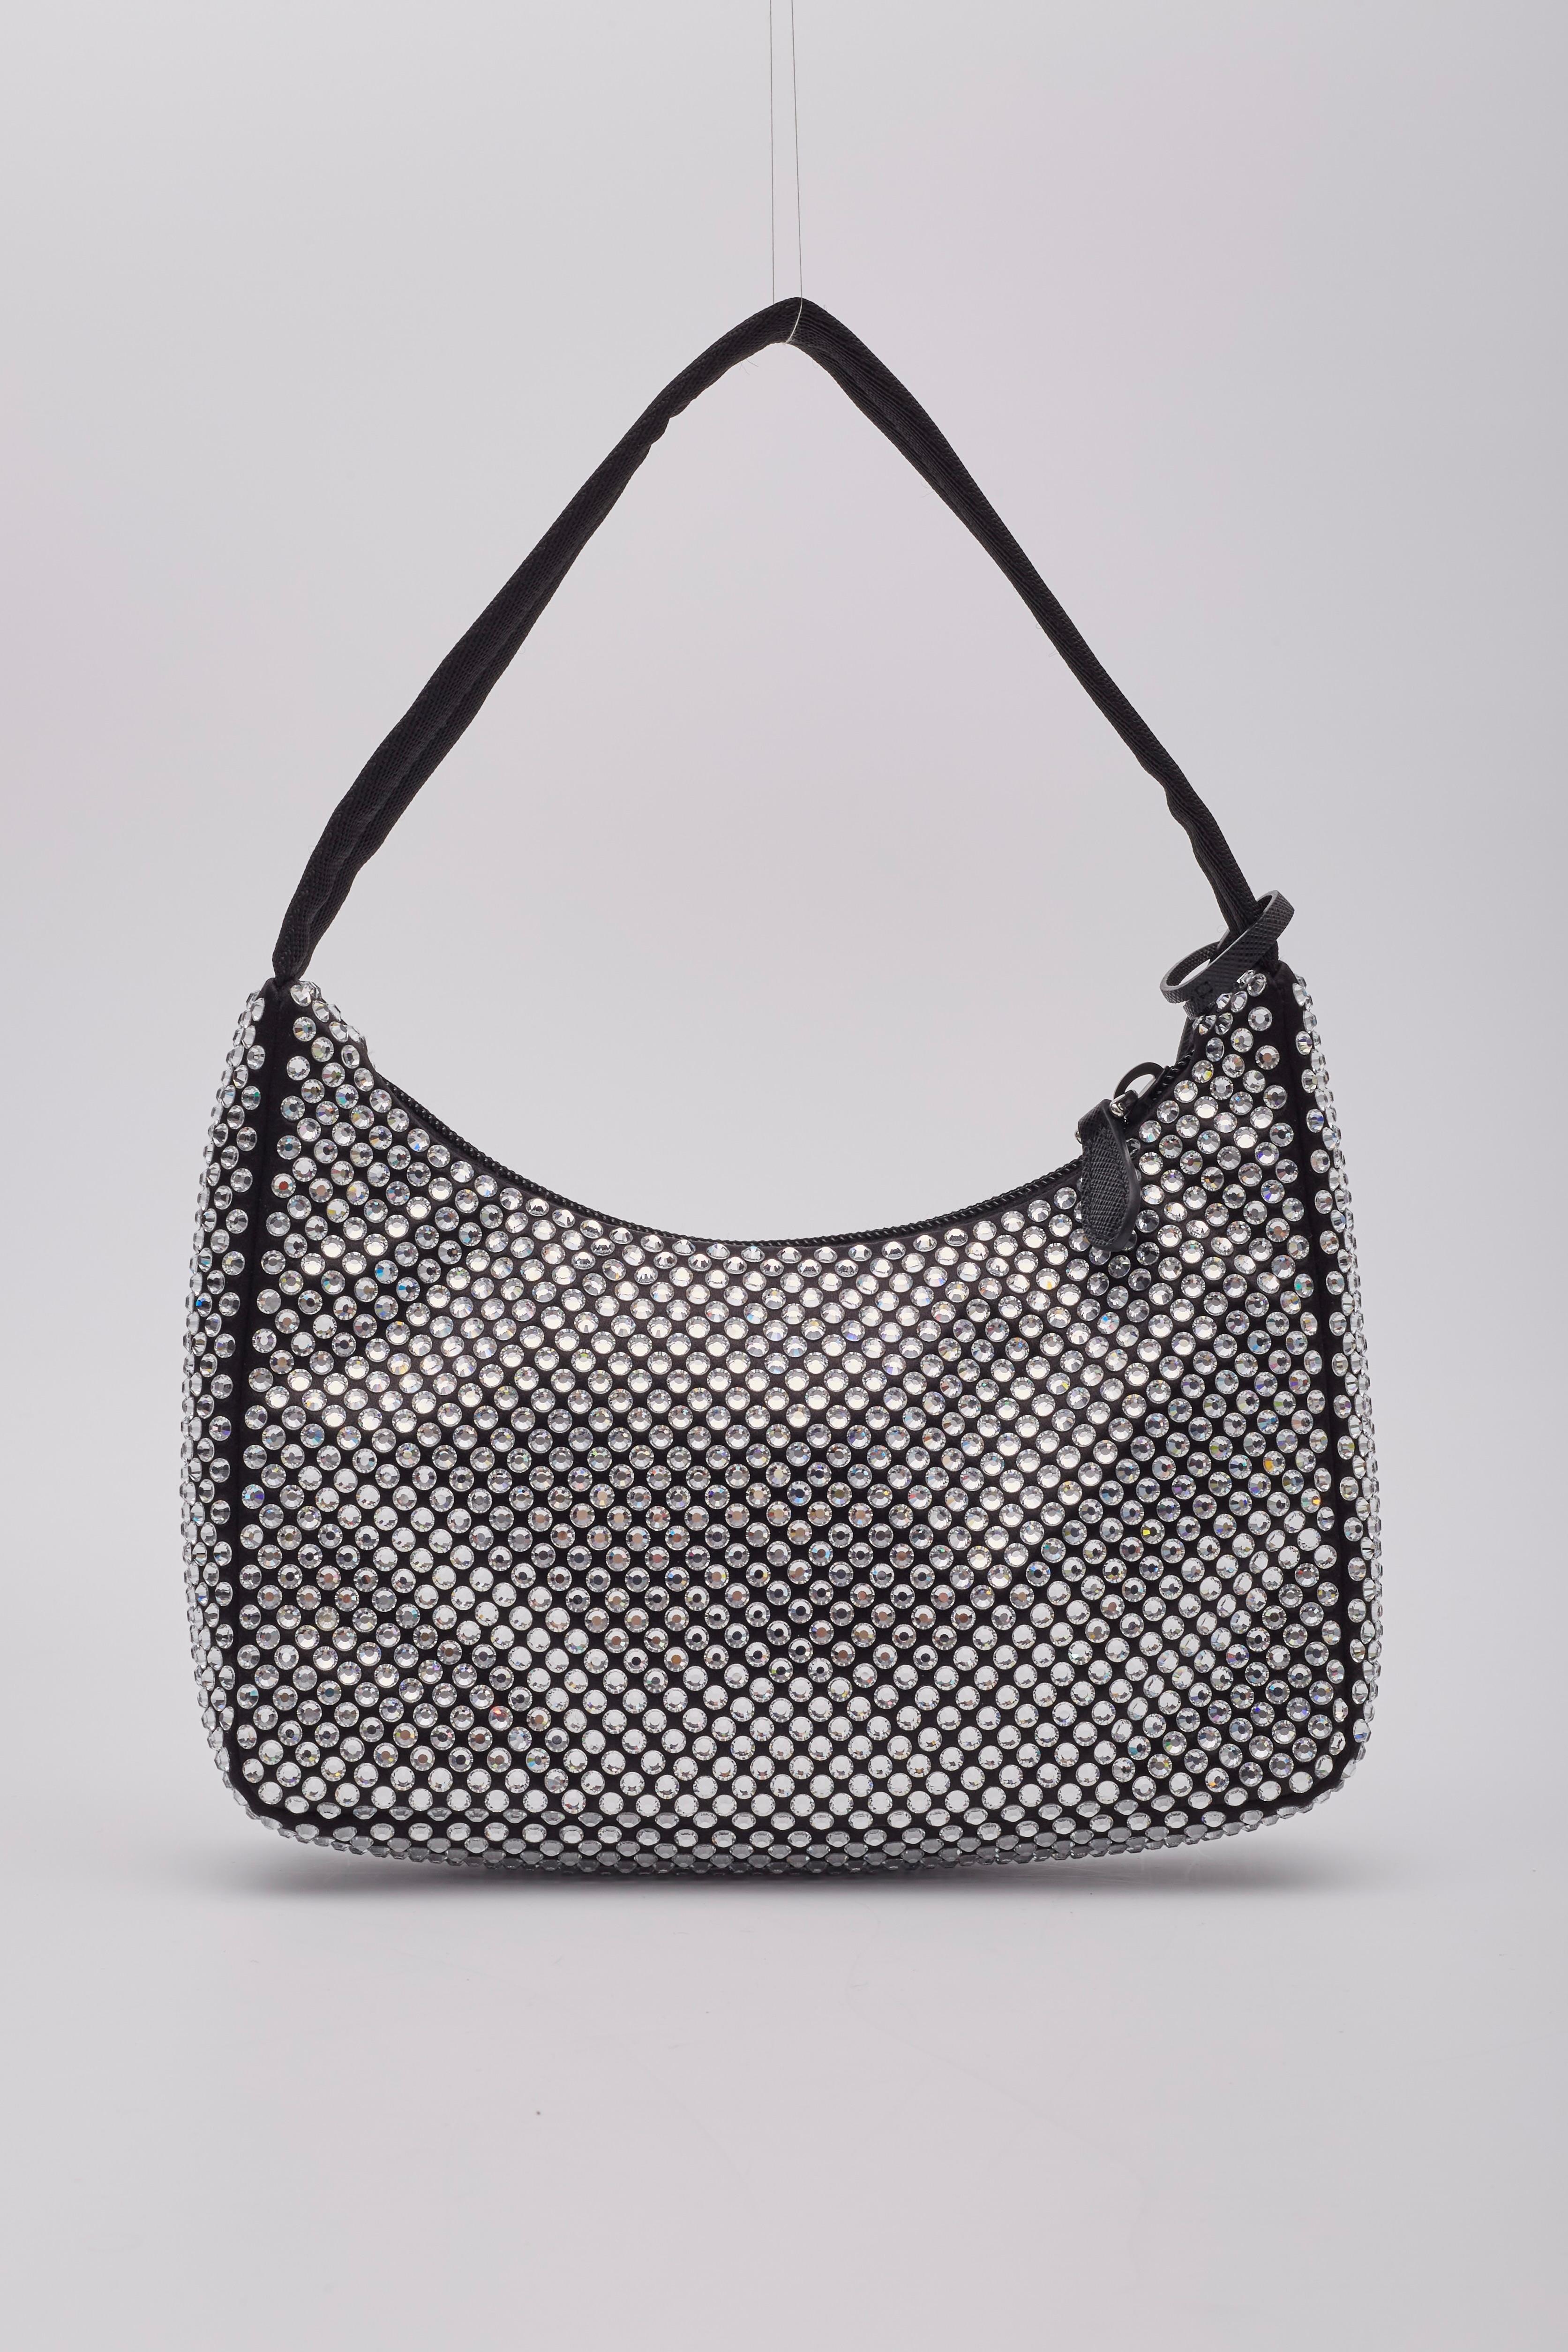 Prada - Mini sac en satin noir et cristal - Réédition 2000 Pour femmes en vente